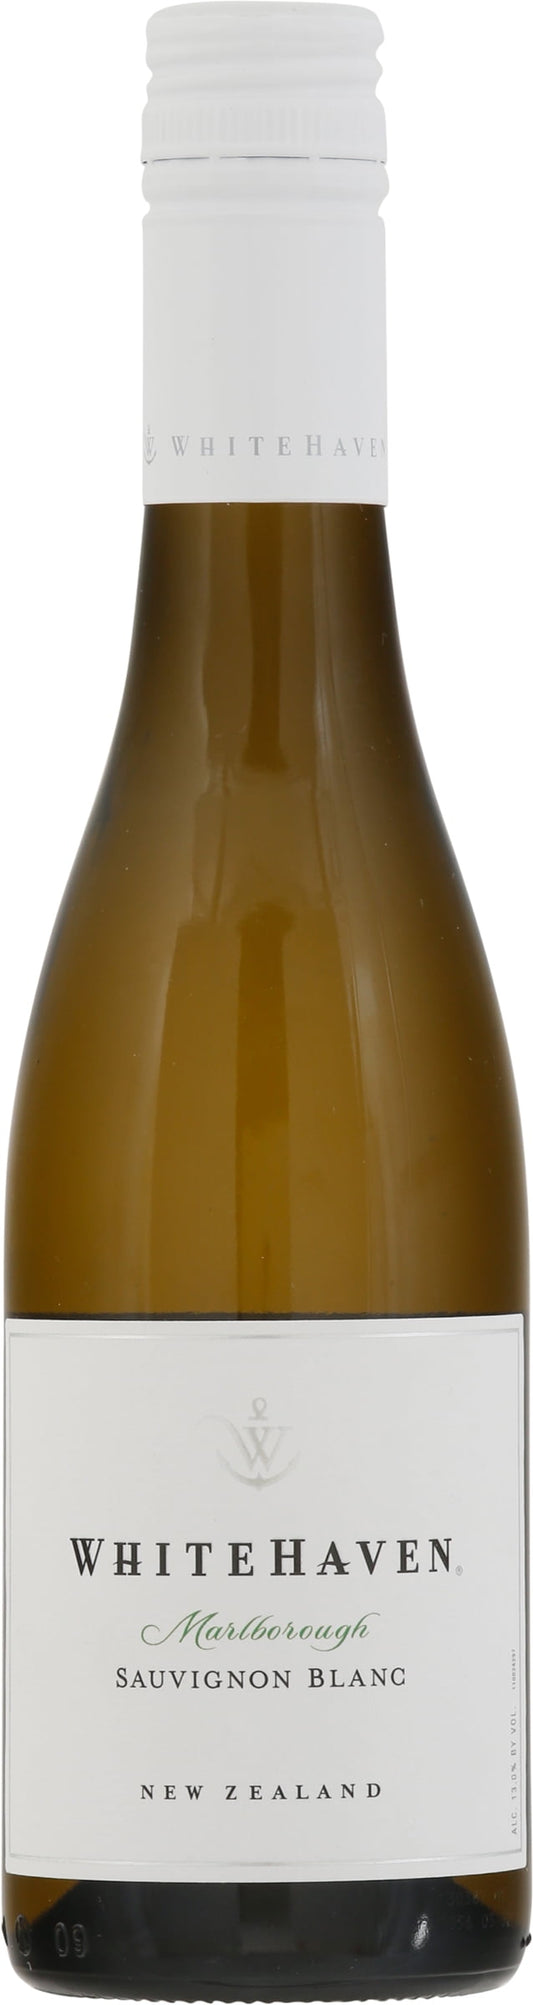 Whitehaven New Zealand Sauvignon Blanc White Wine, 375ml Glass Bottle